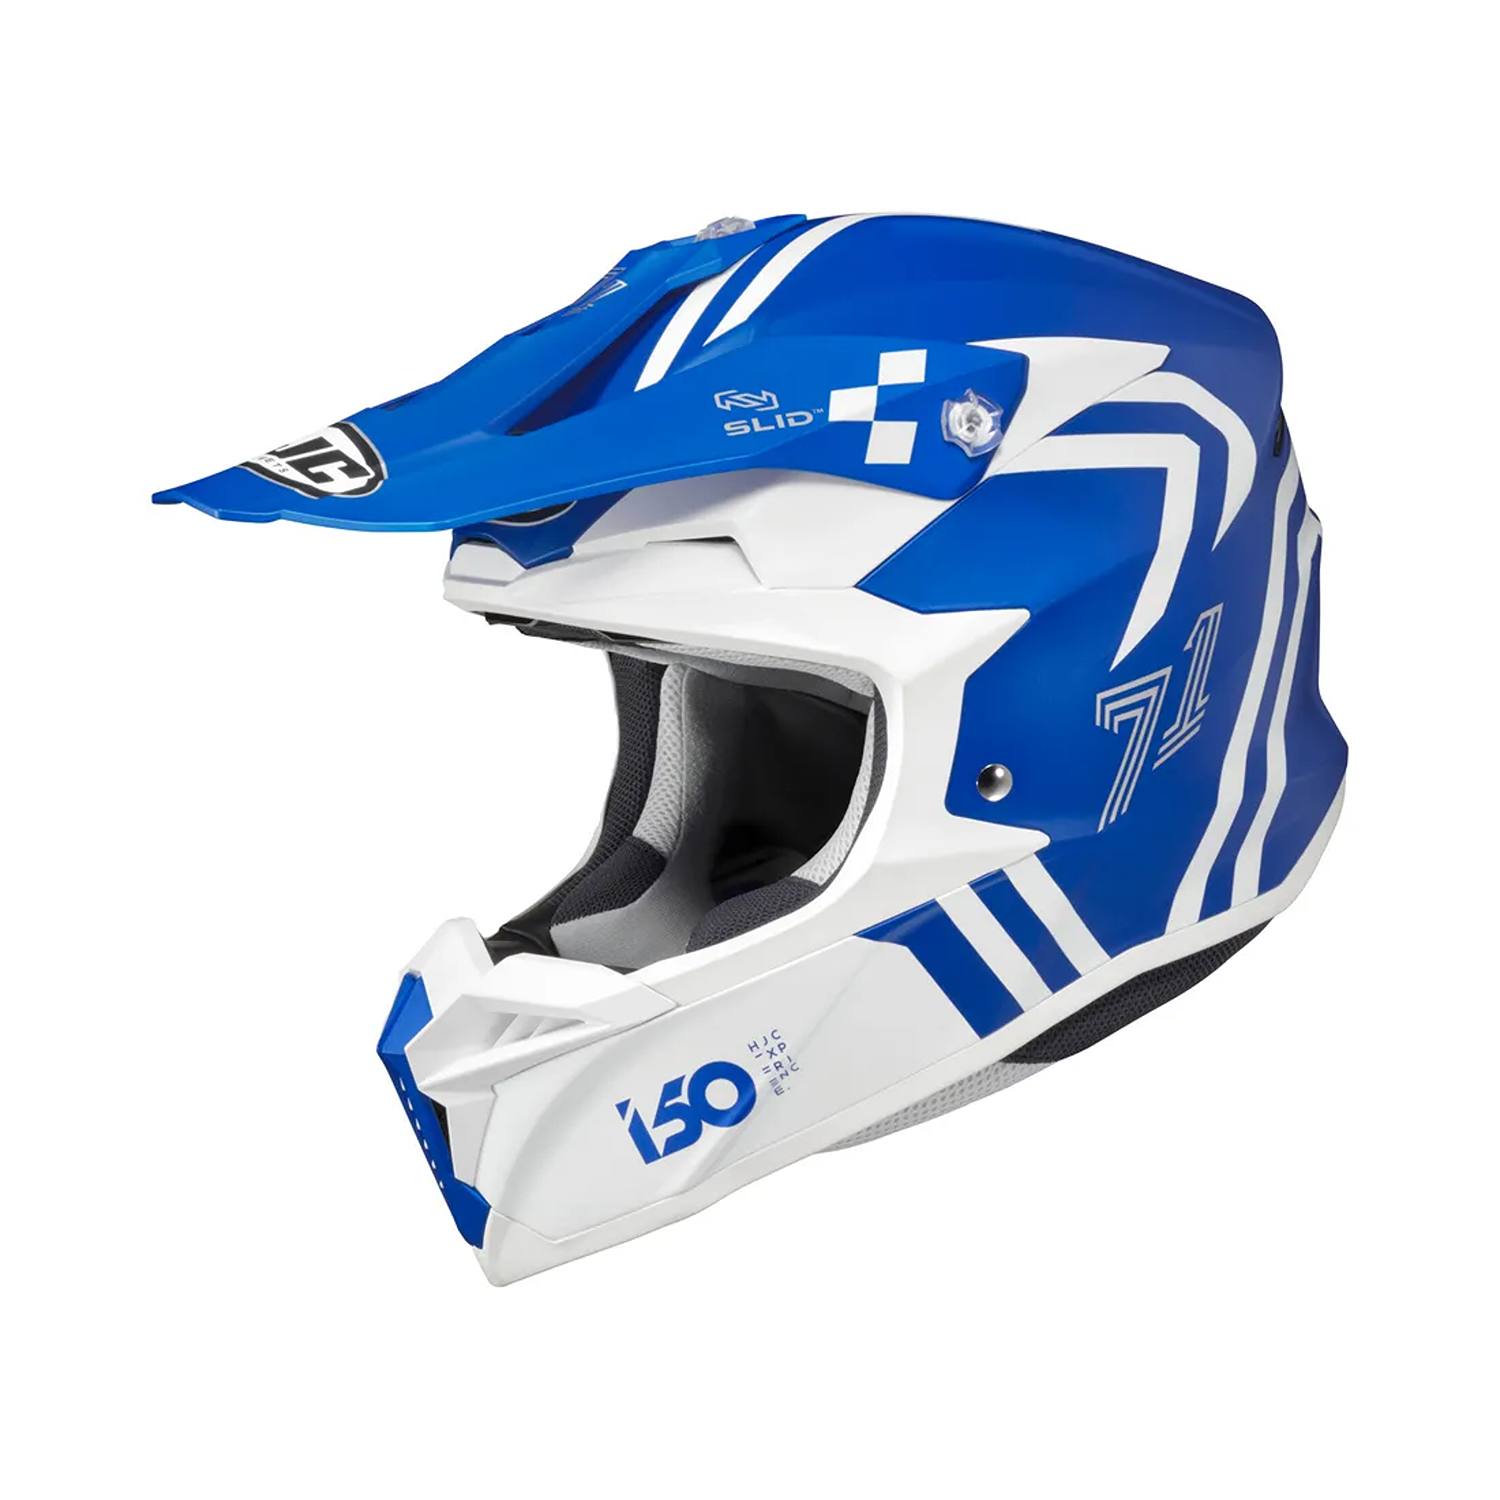 Image of HJC I50 Hex Helmet Blue White Size M EN